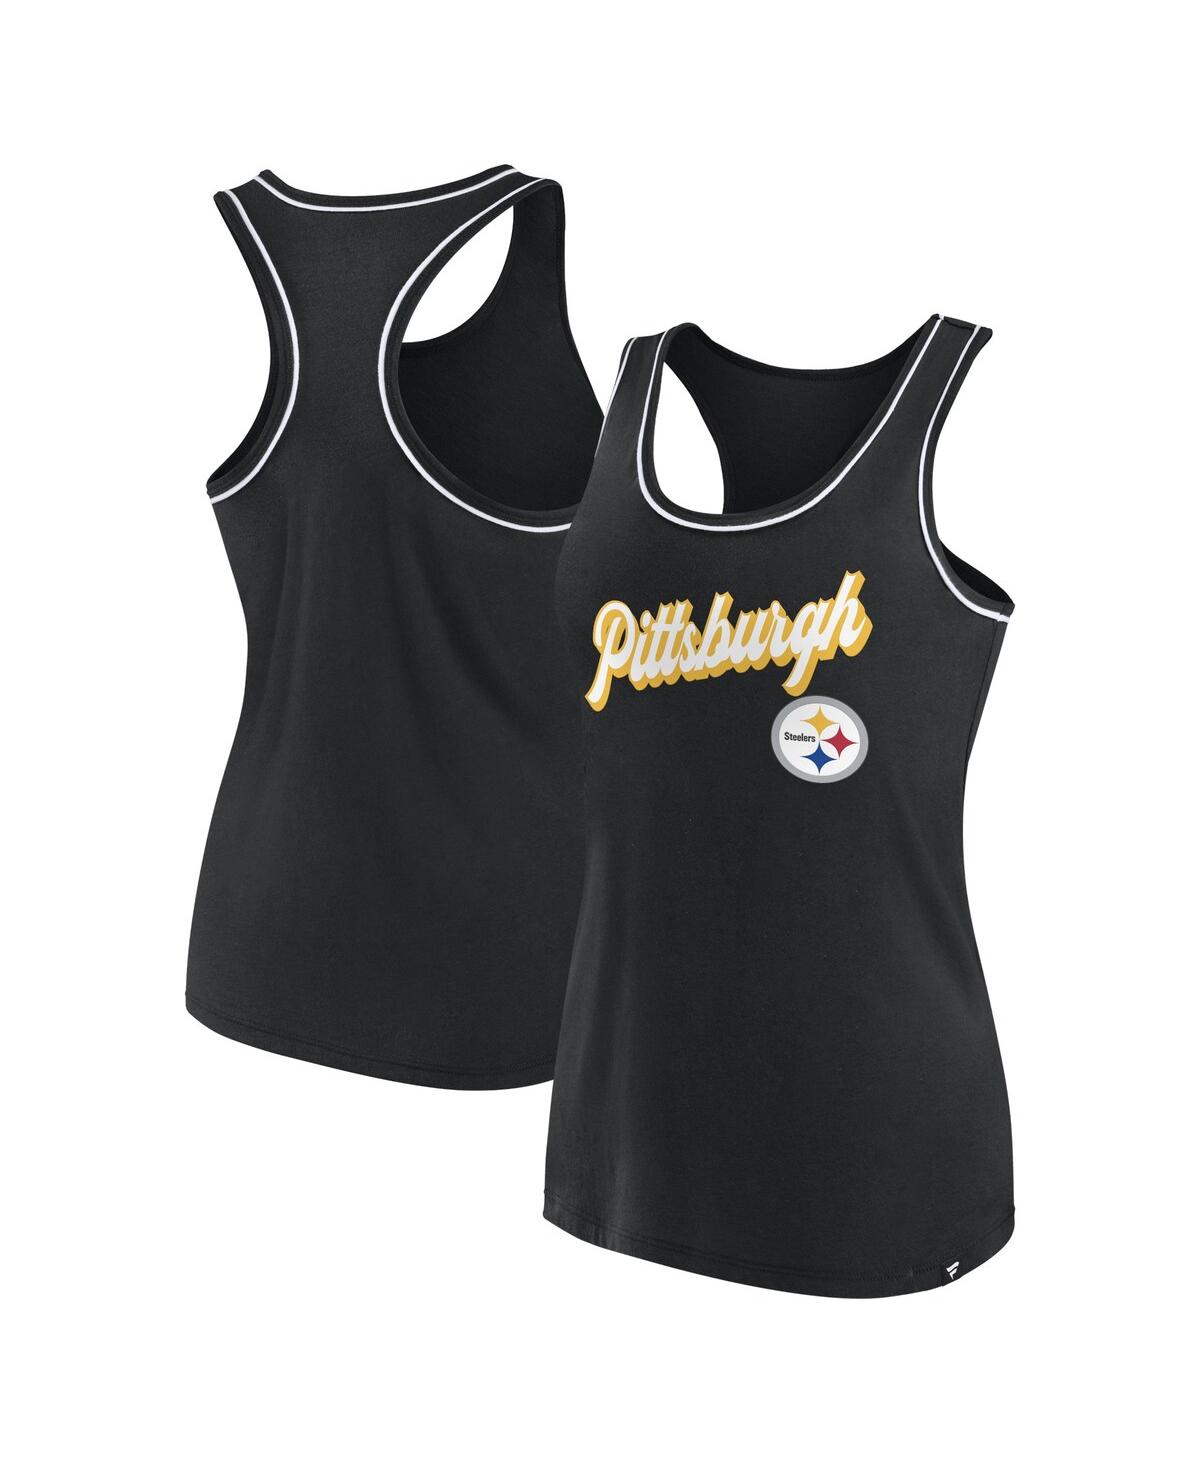 Fanatics Women's  Black Pittsburgh Steelers Wordmark Logo Racerback Scoop Neck Tank Top